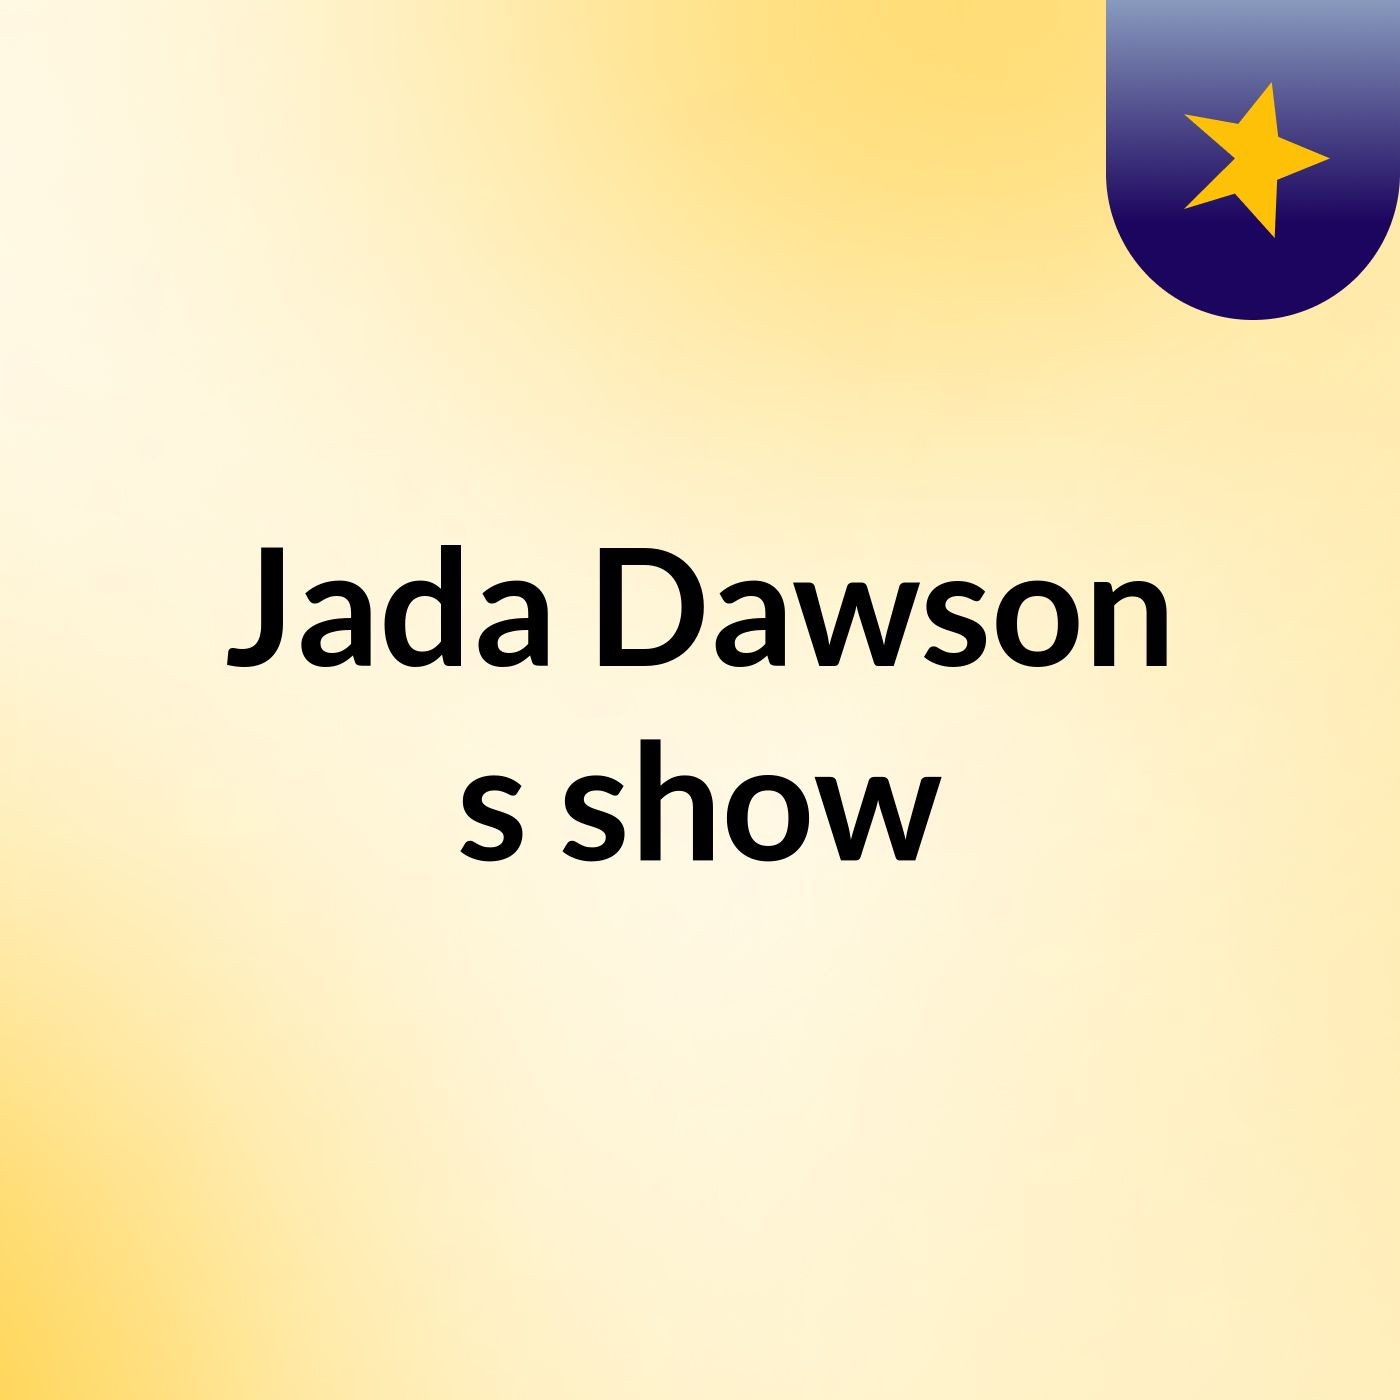 Episode 3 - Jada Dawson's show